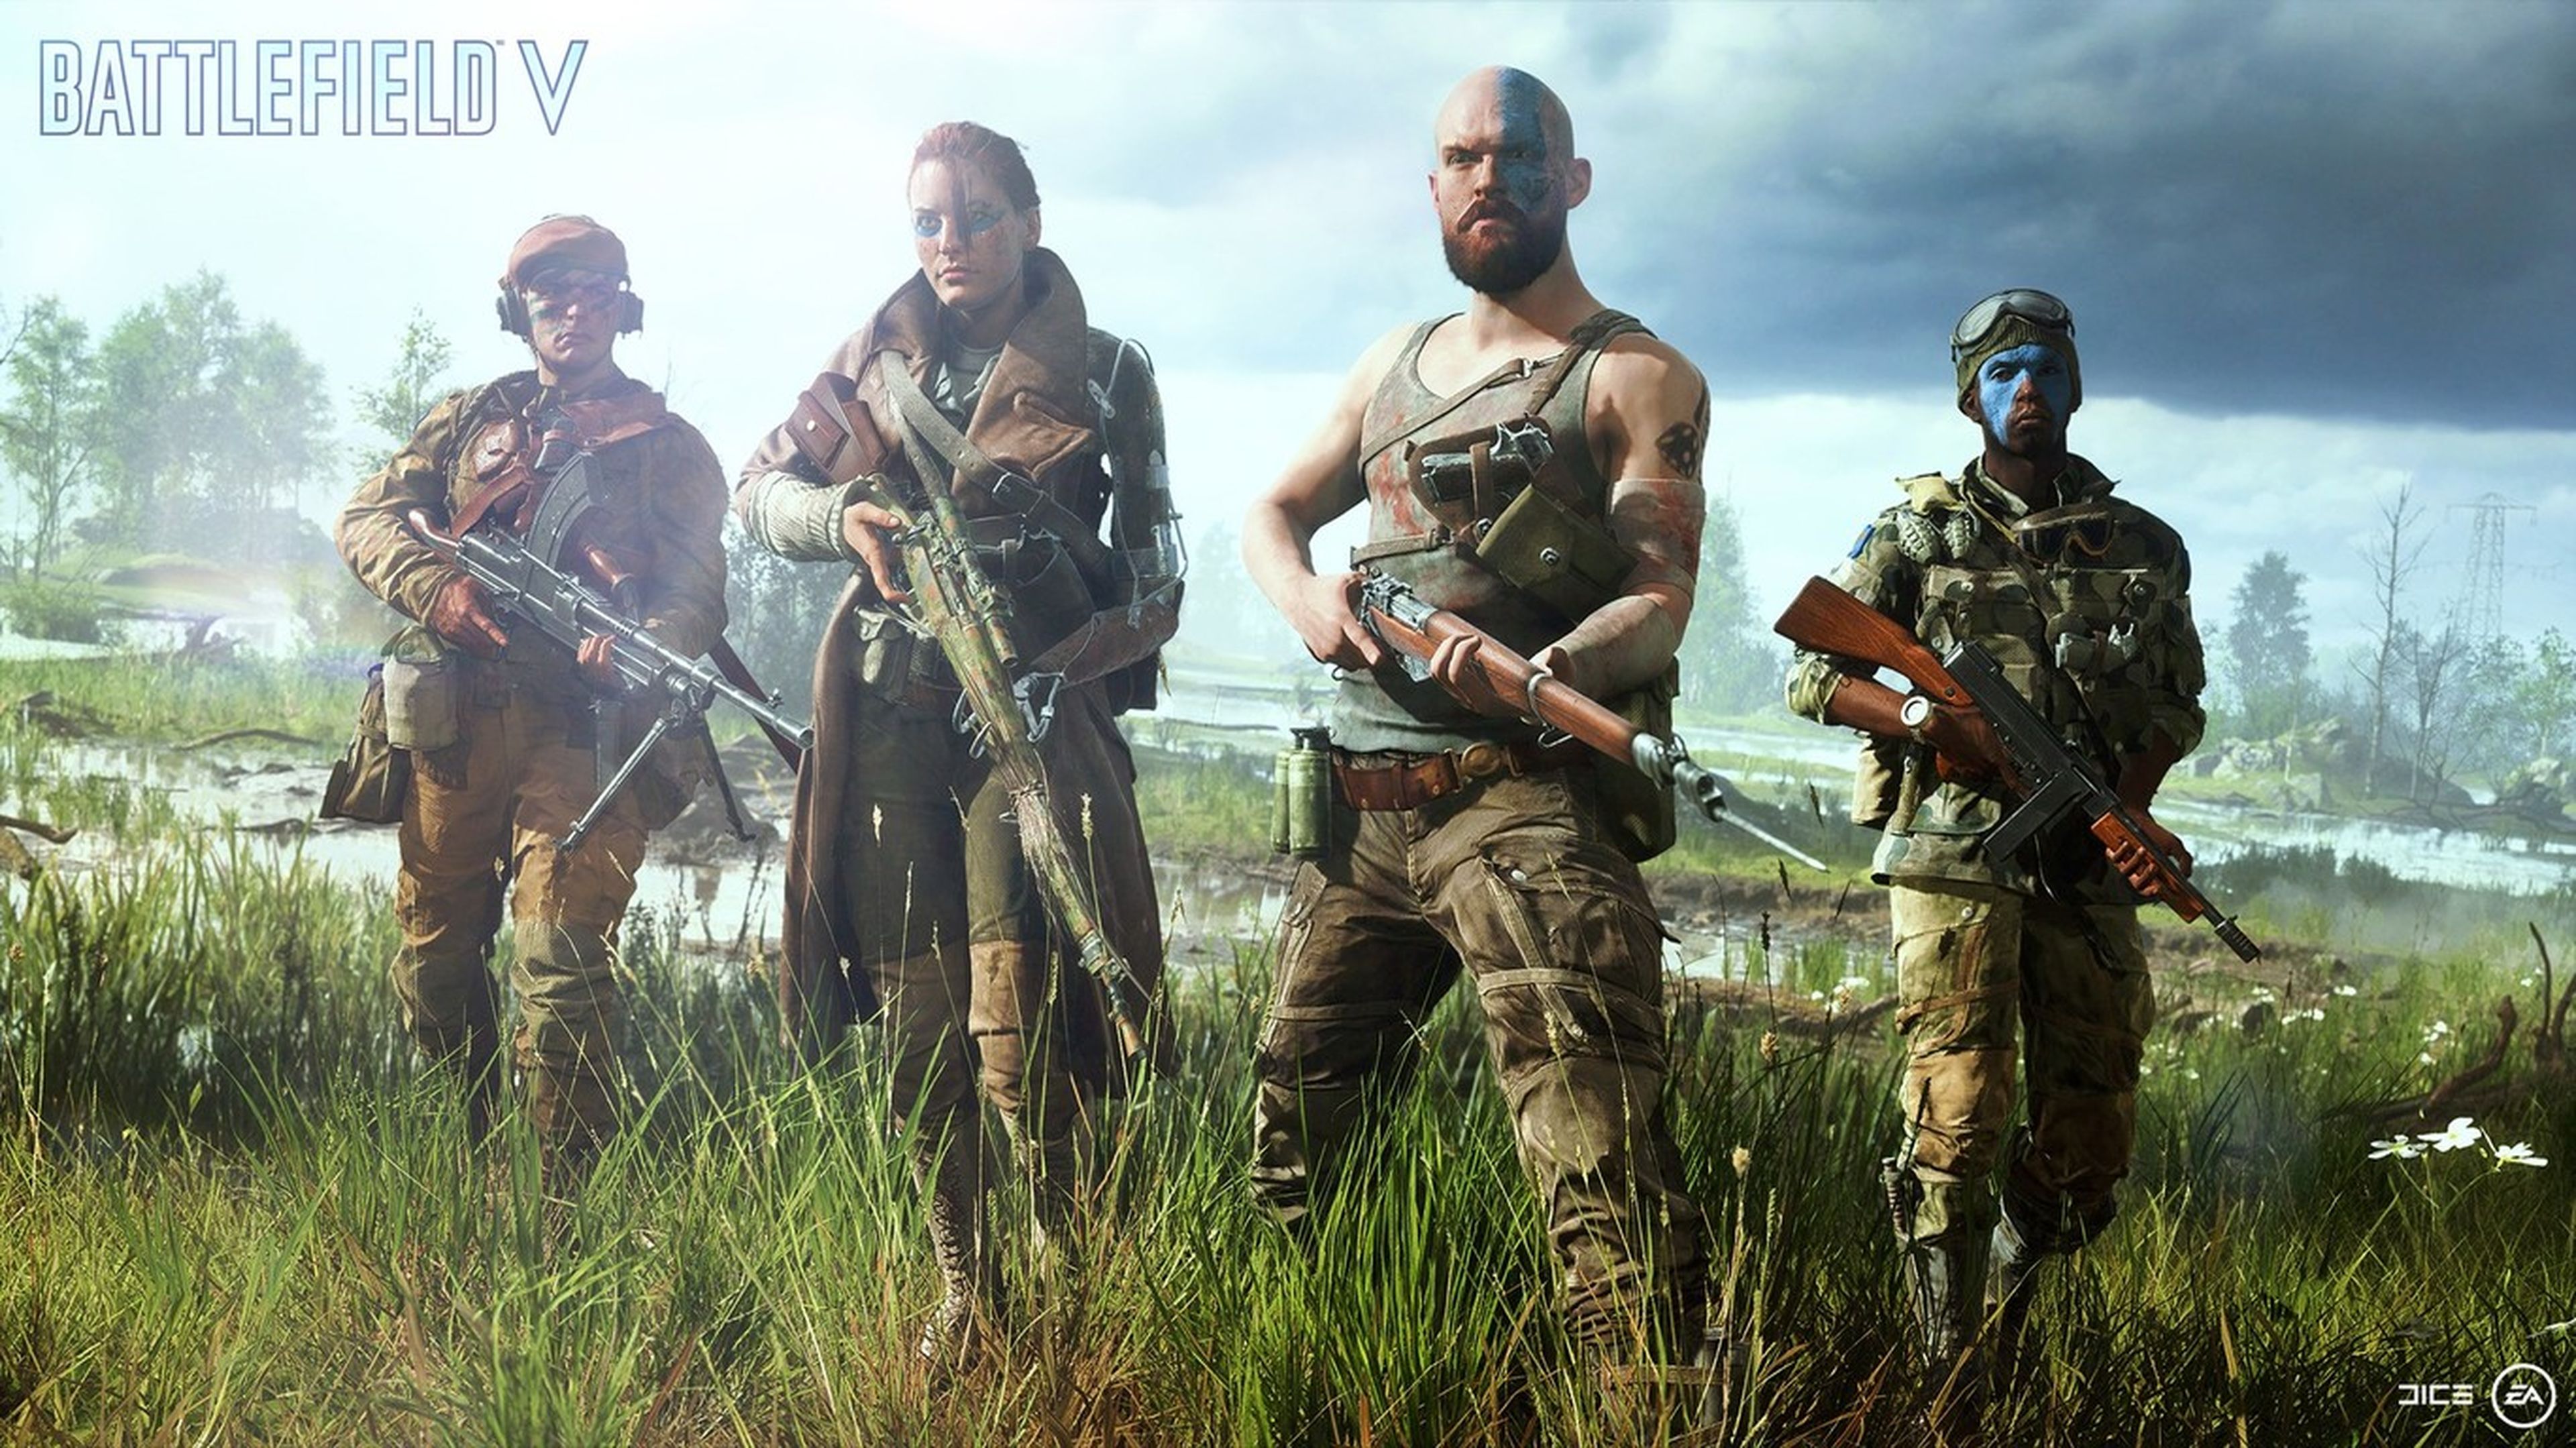 ¿Qué mejoras traerá el nuevo 'Battlefield' con respecto a la entrega anterior (imagen)?